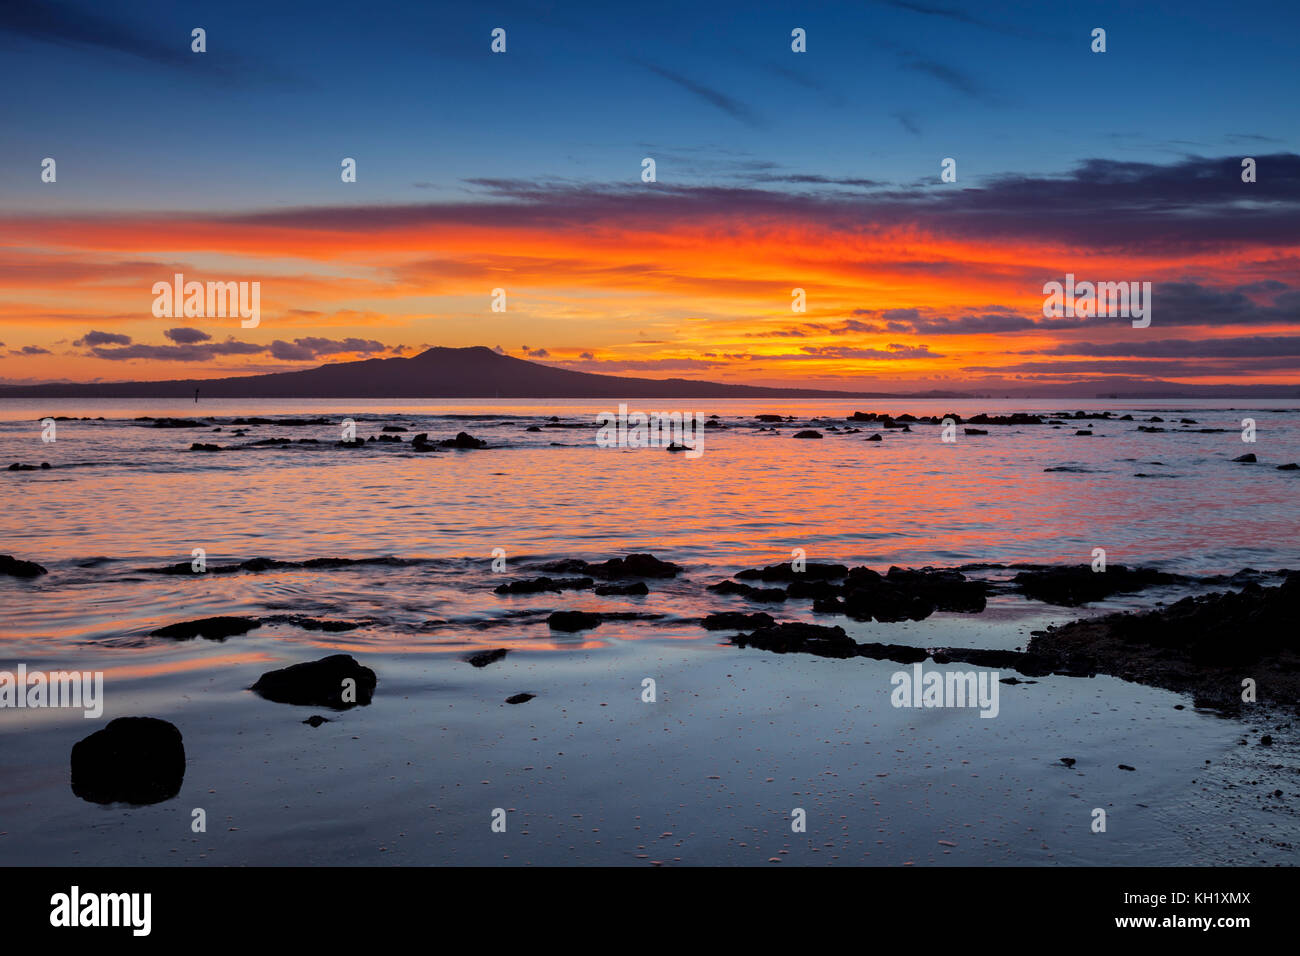 Rangitoto Island at sunrise, Auckland, New Zealand. Stock Photo